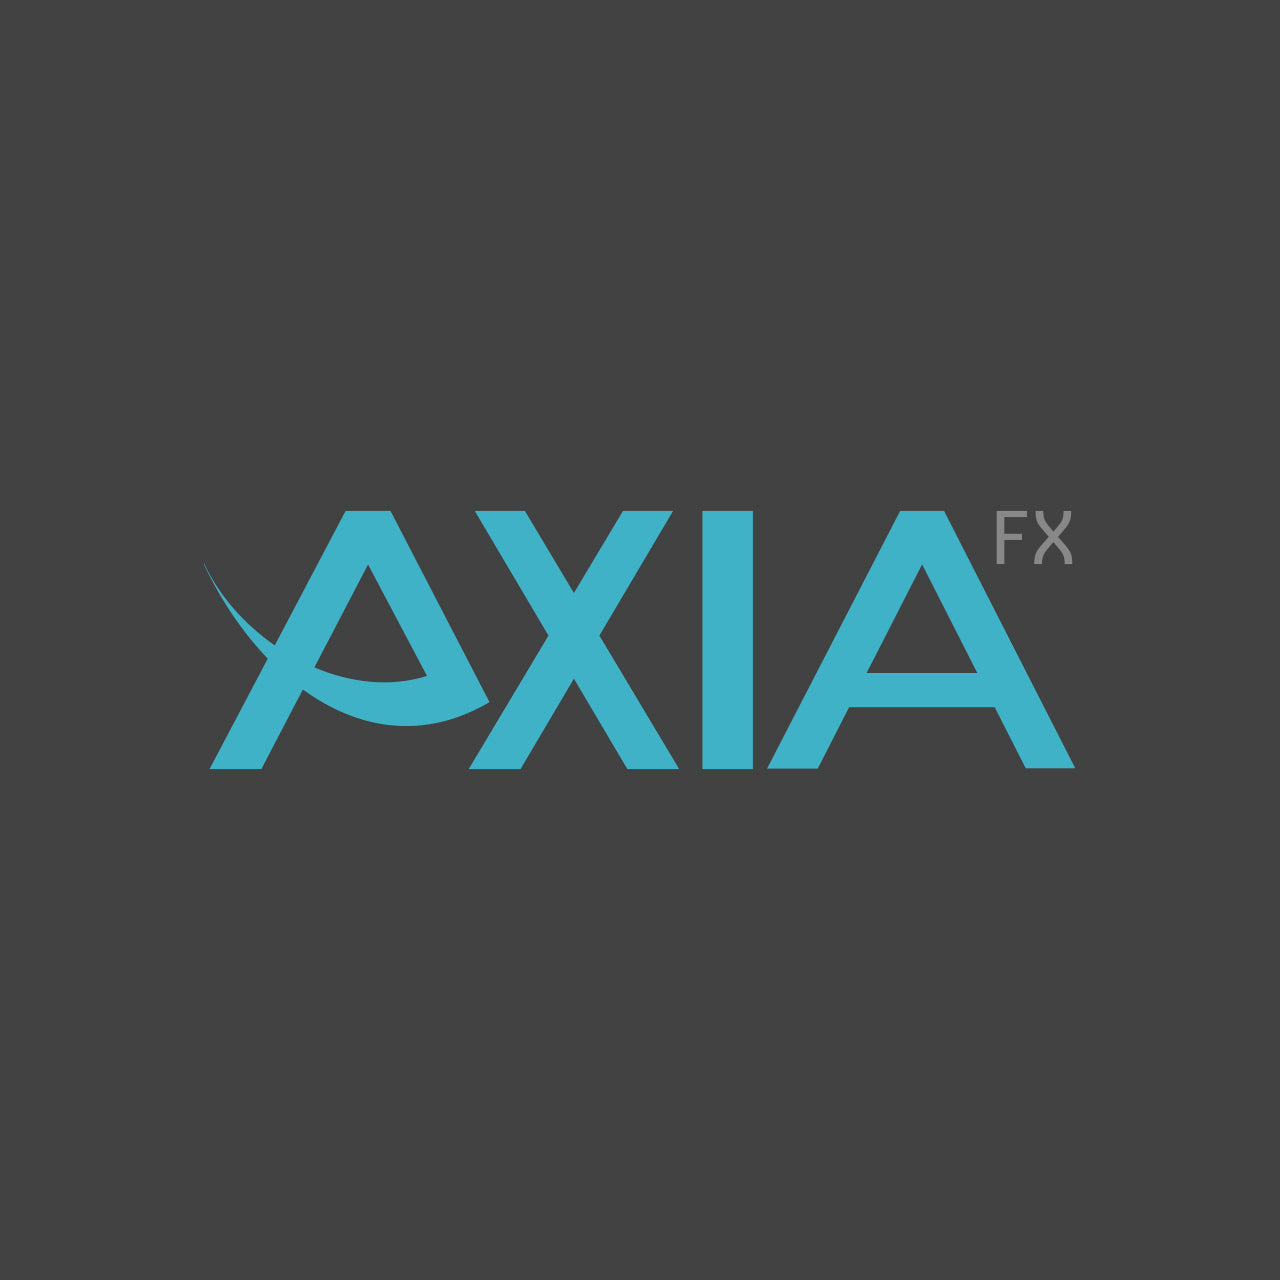 Axia FX